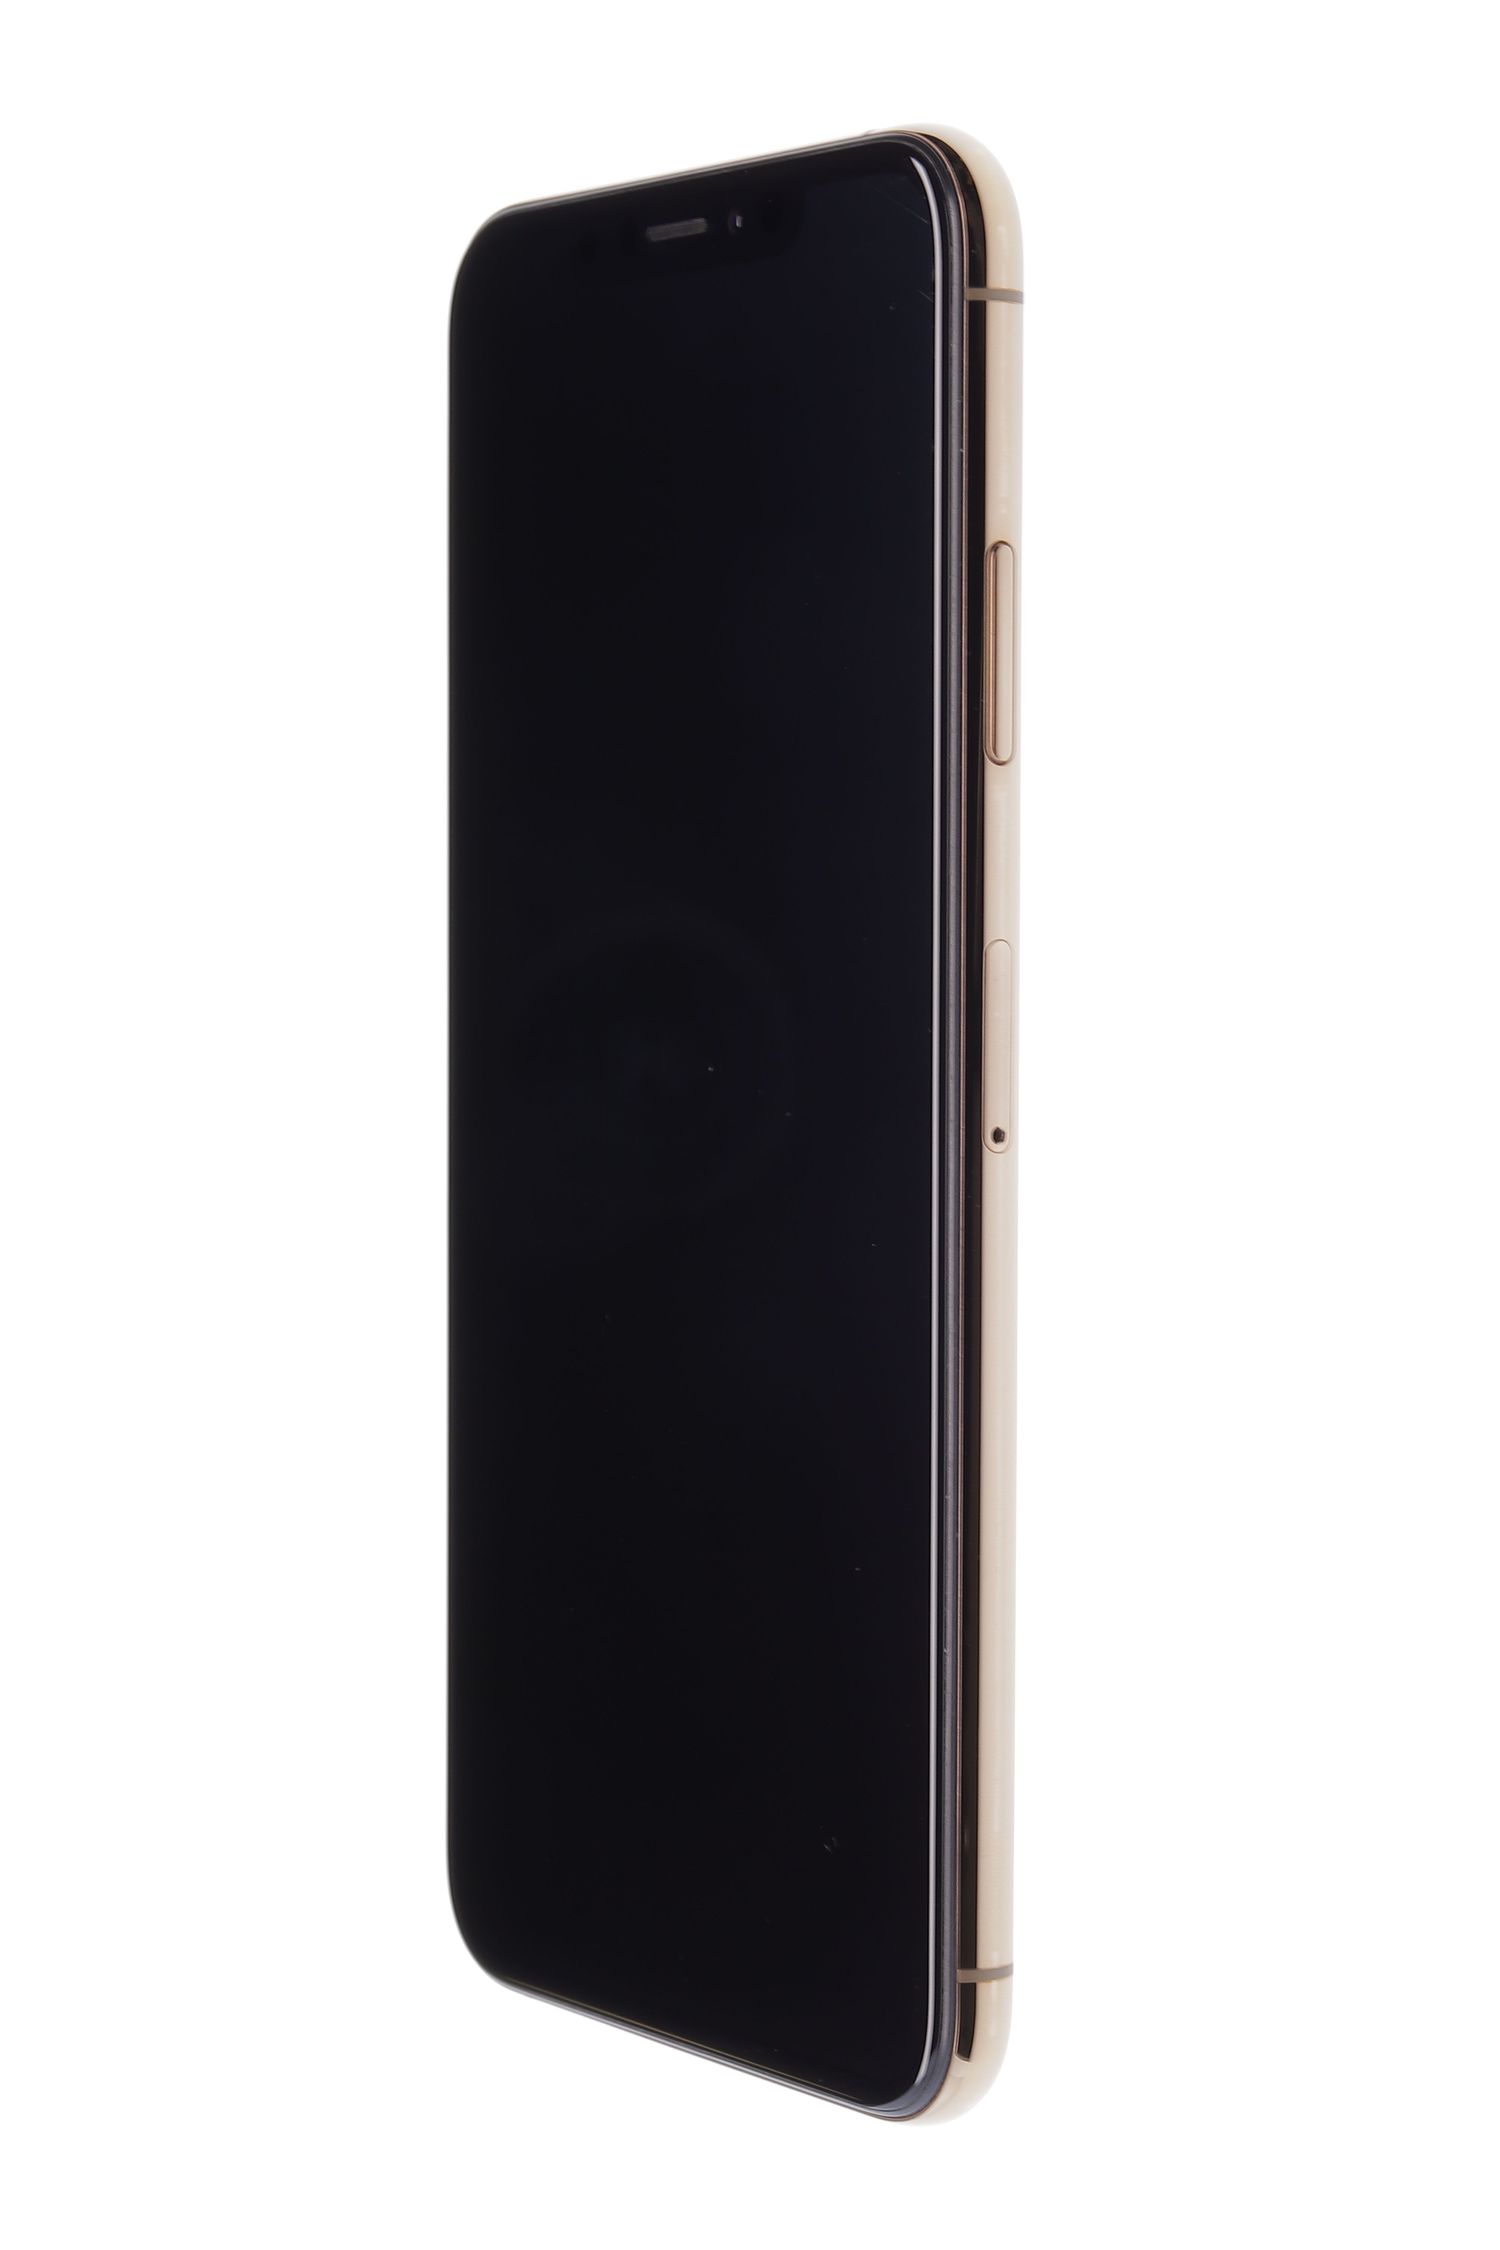 Κινητό τηλέφωνο Apple iPhone XS Max, Gold, 256 GB, Excelent